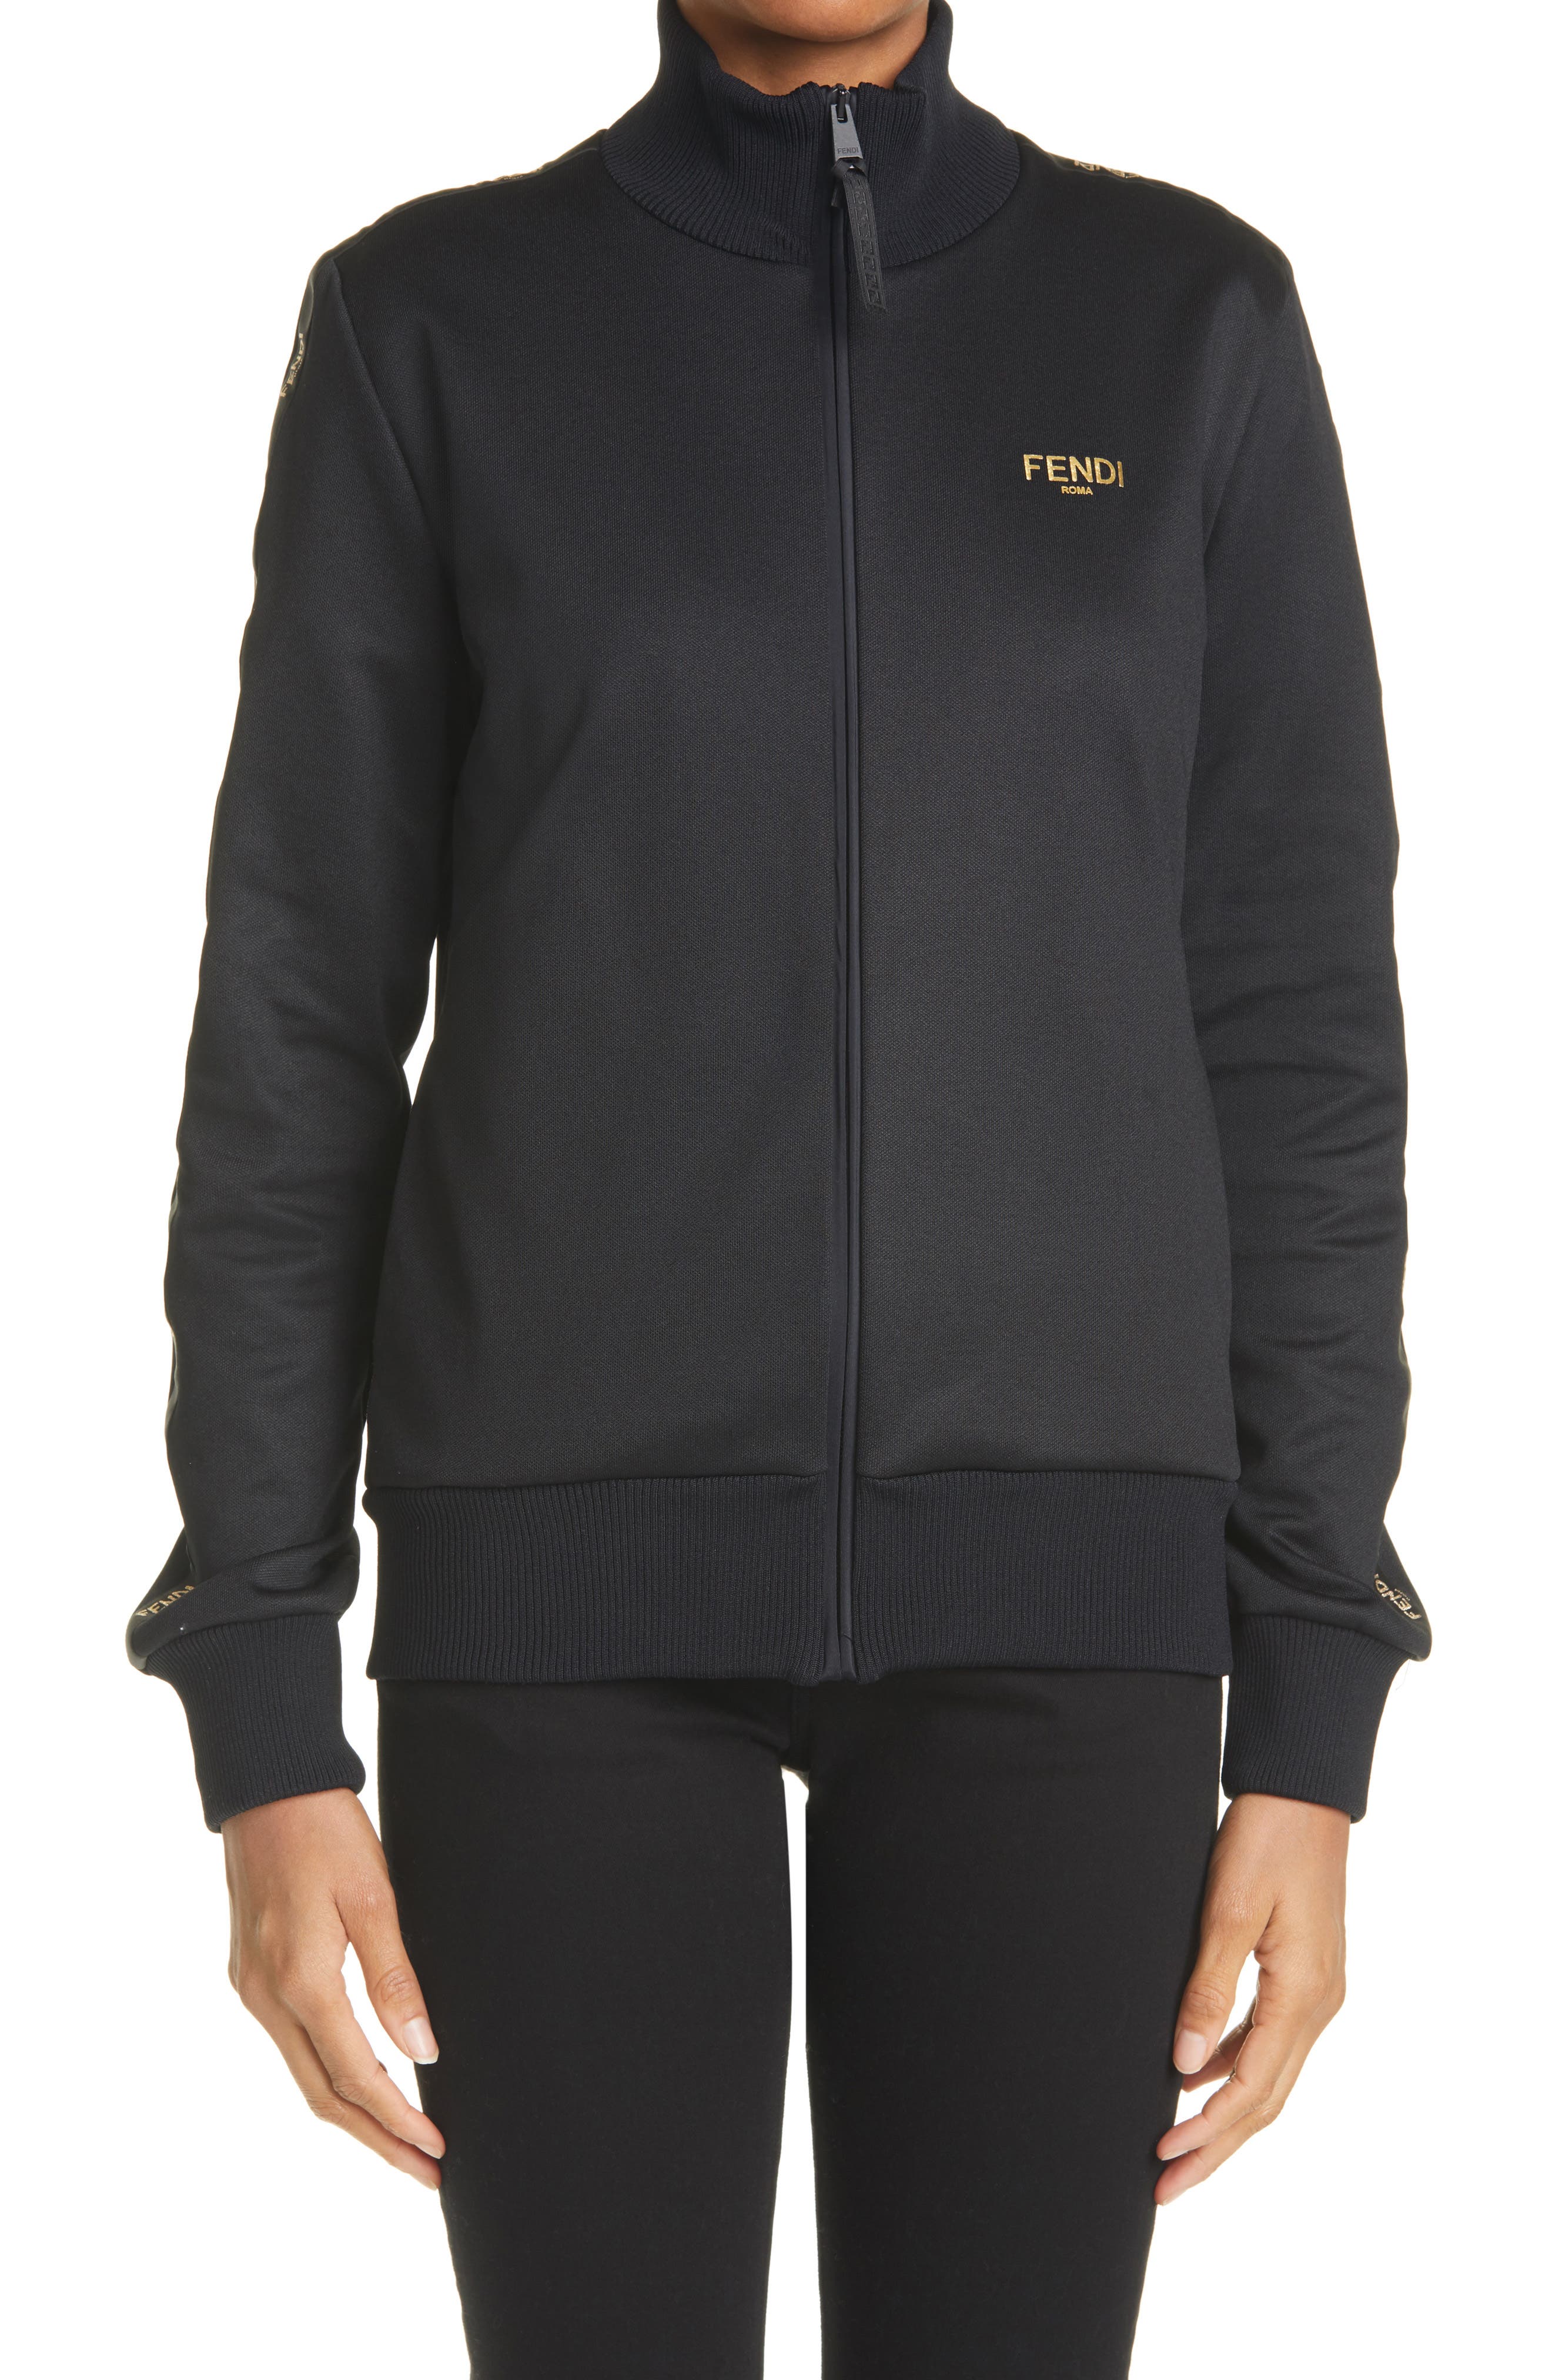 Fendi Logo Jersey Pique Track Jacket in Black at Nordstrom, Size 0 Us